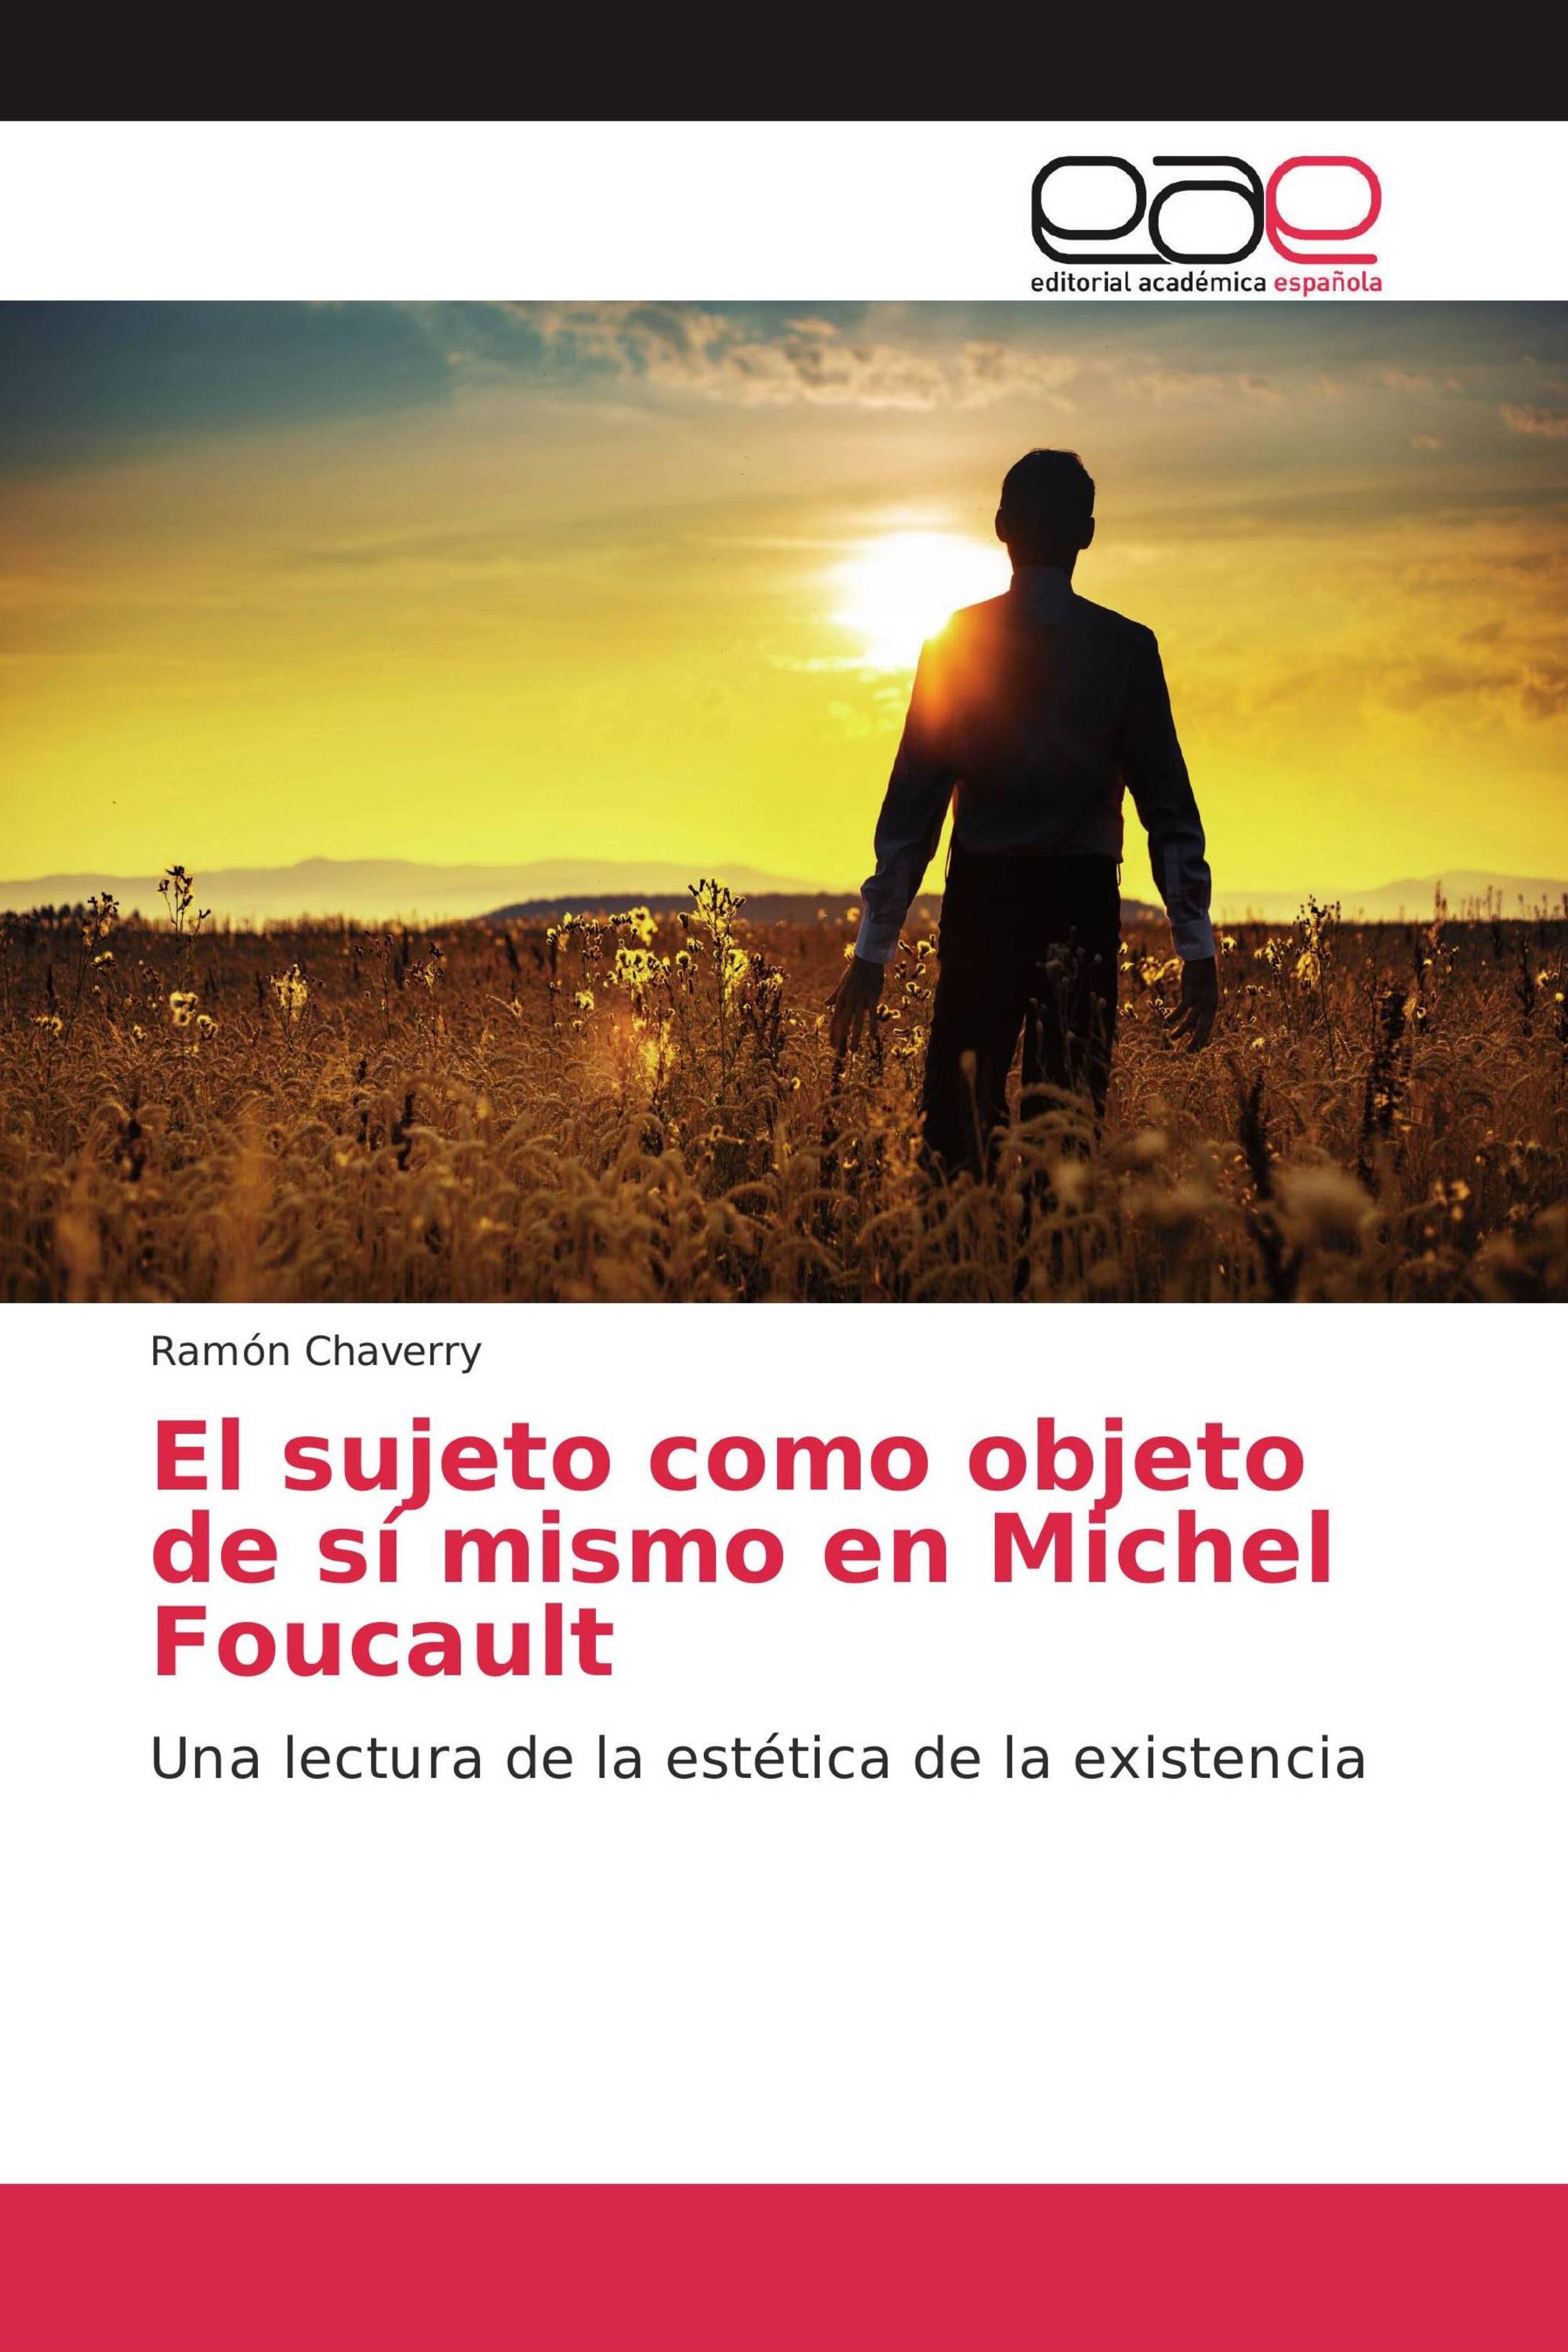 El sujeto como objeto de sí mismo en Michel Foucault